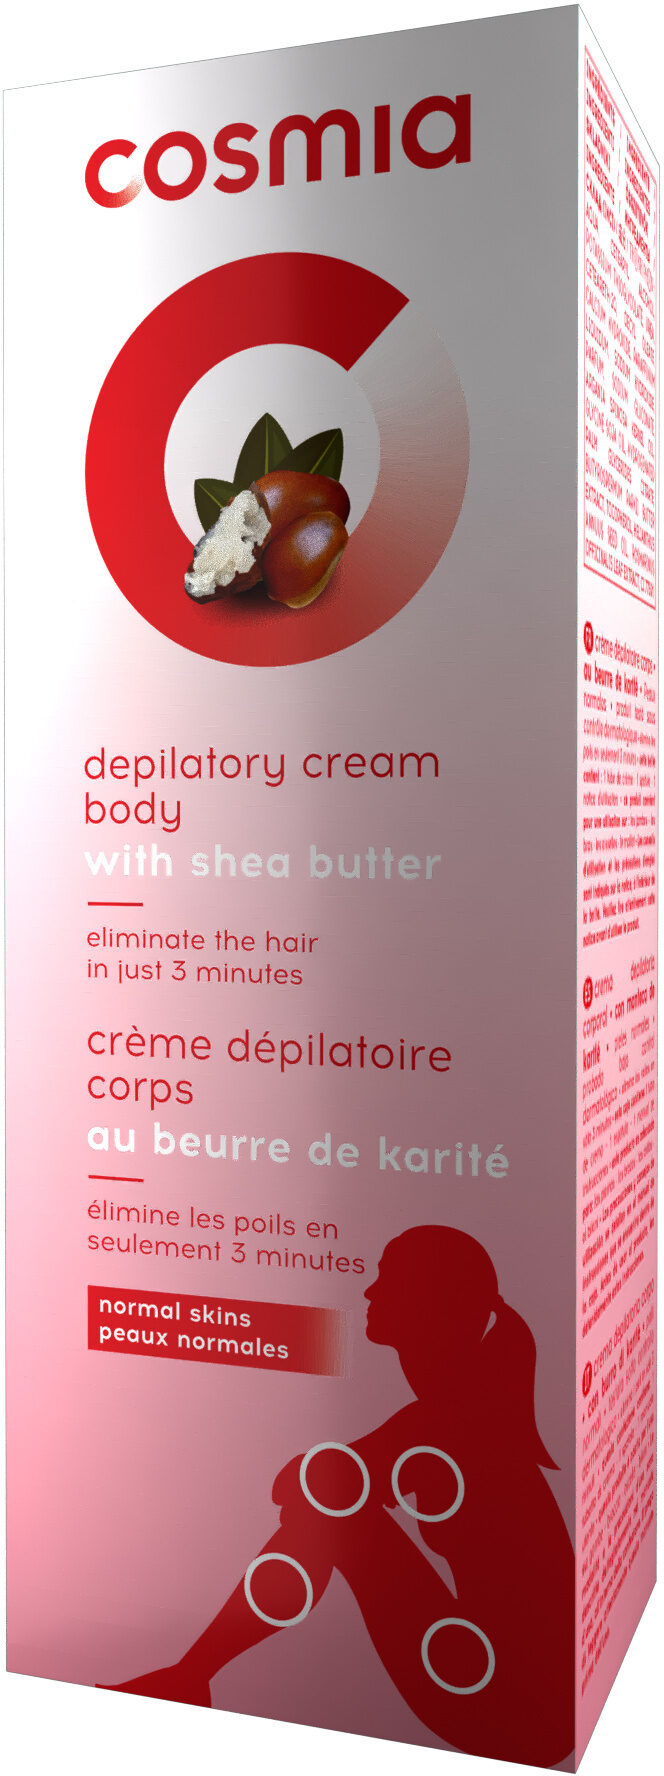 Crème dépilatoire corps au beurre de karité - Produkt - fr